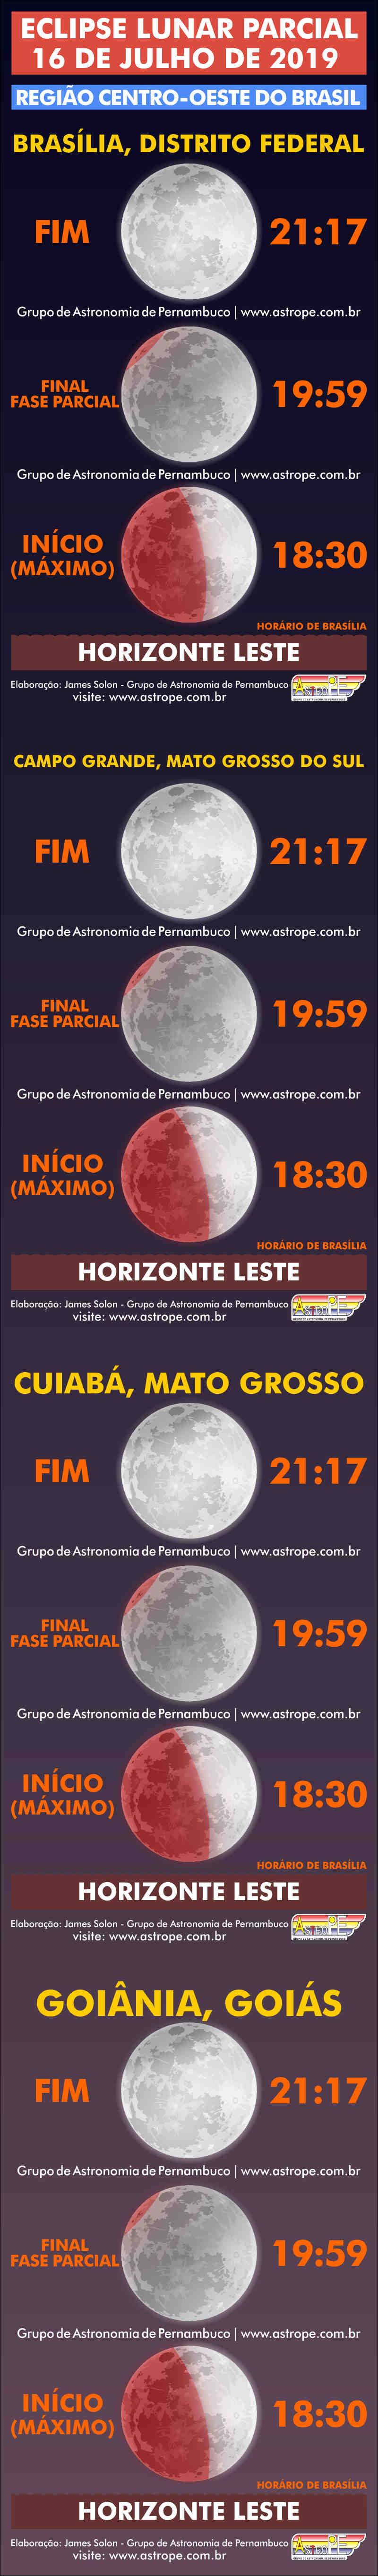 Horários do Eclipse Lunar Parcial de 16 de julho de 2019 na Região Centro-Oeste do Brasil. Crédito: AstroPE.